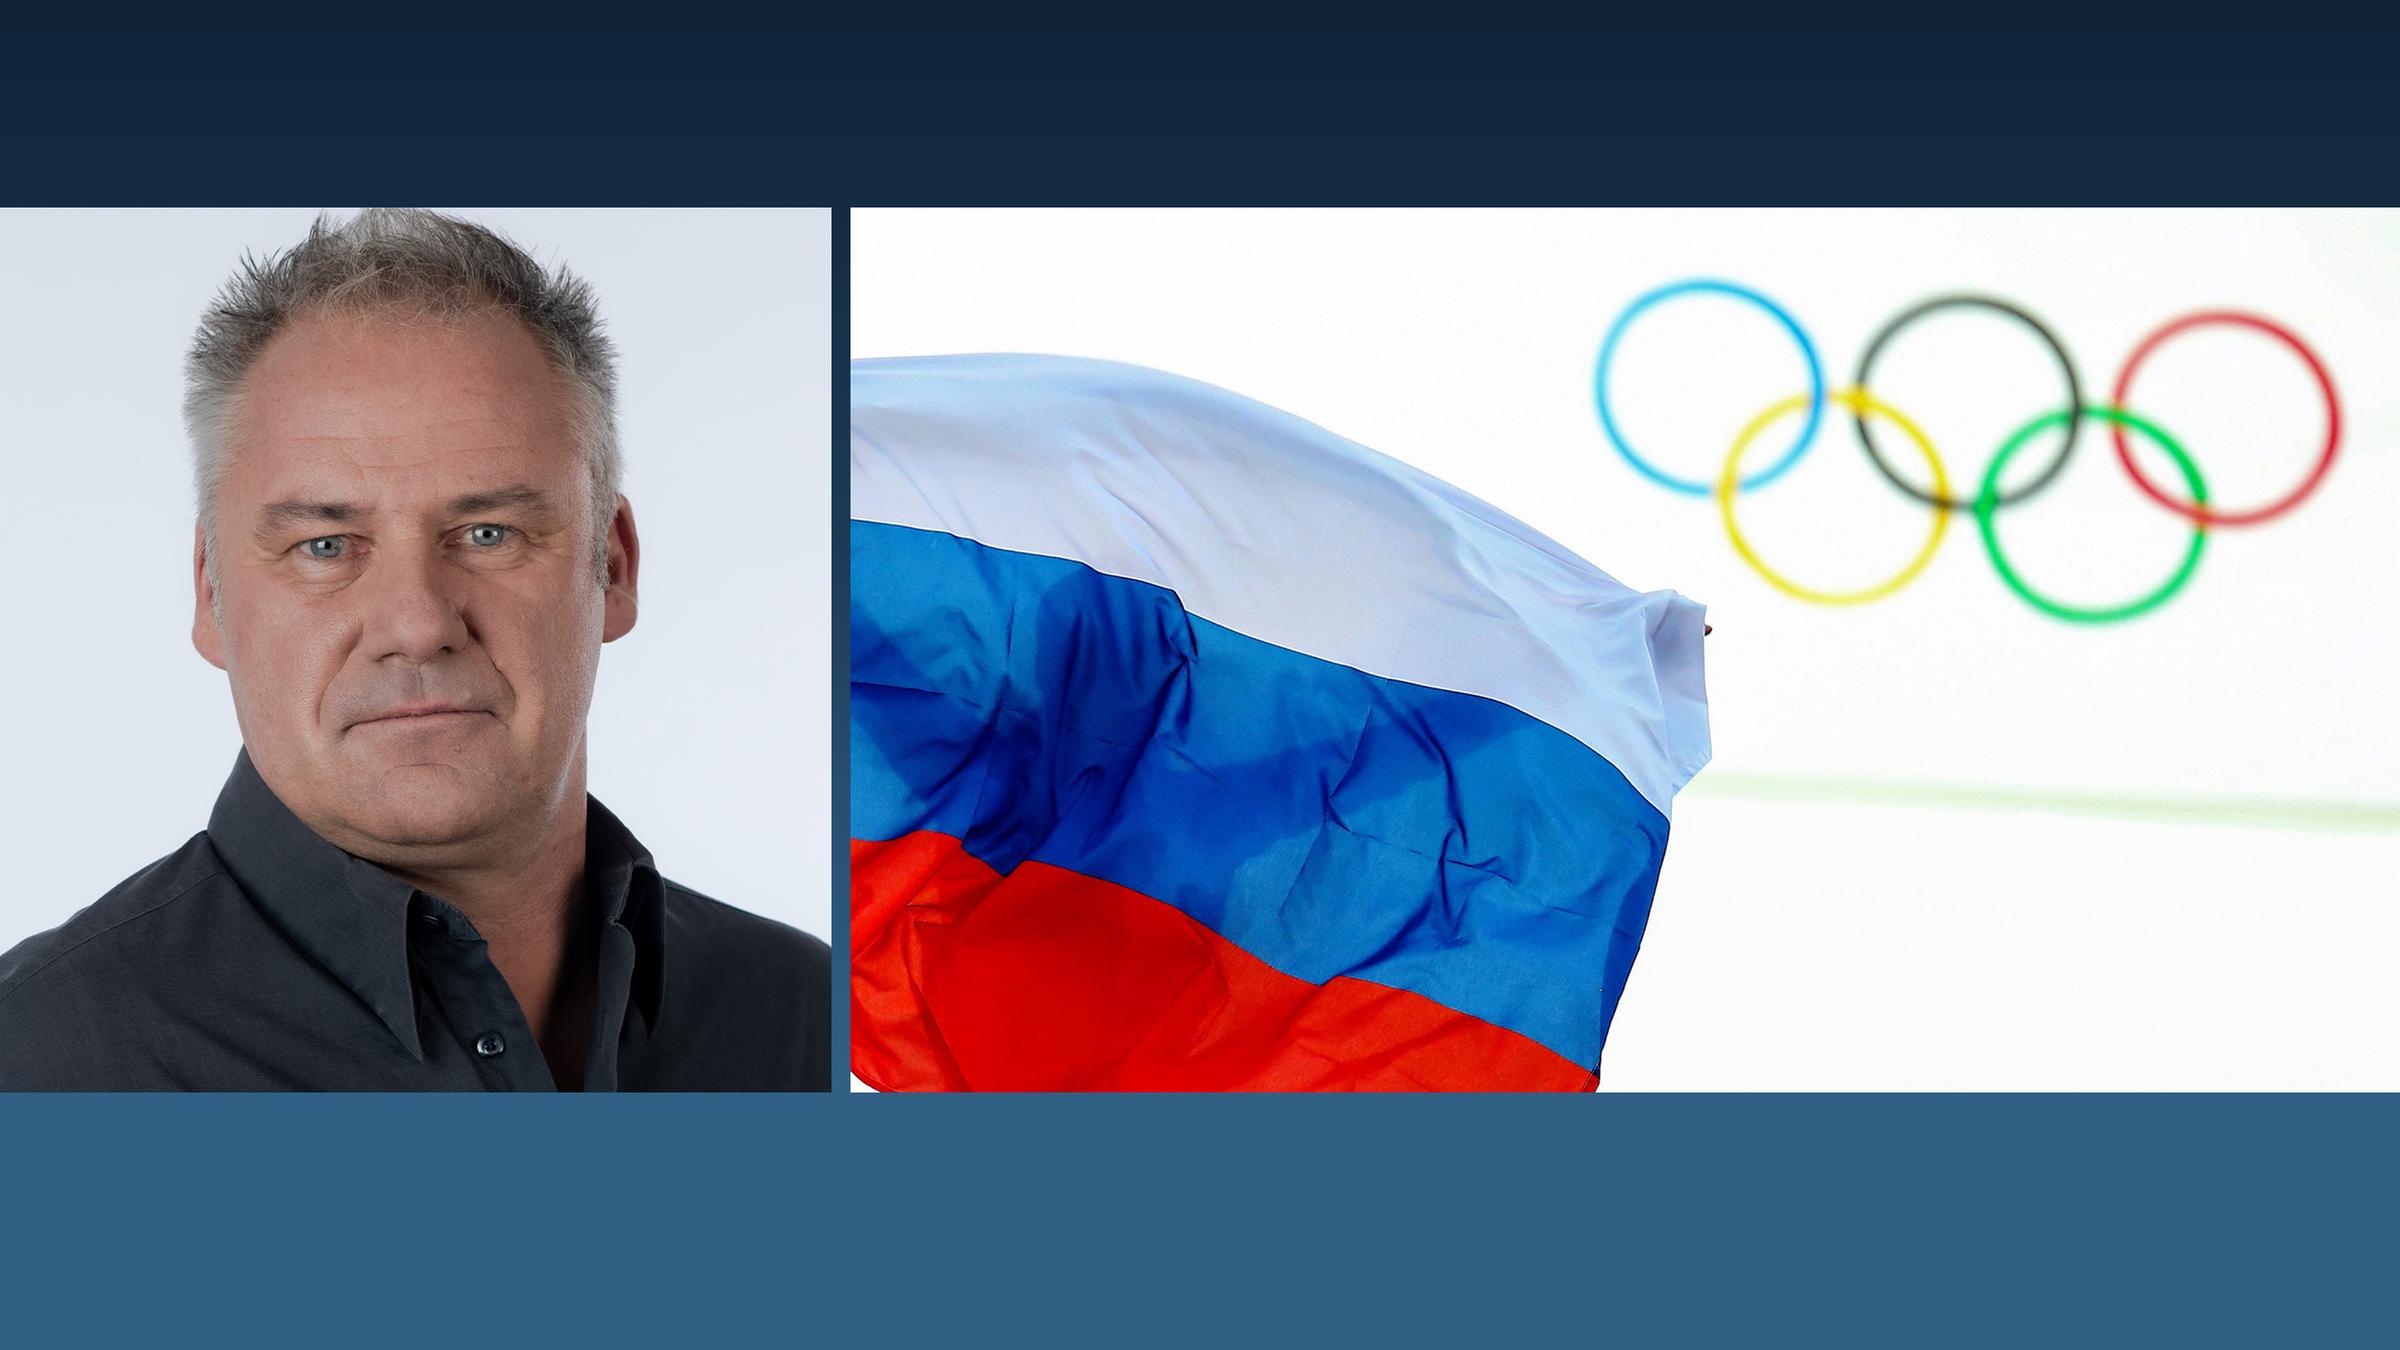 Kommentar Nils Kaben zu IOC und Russland